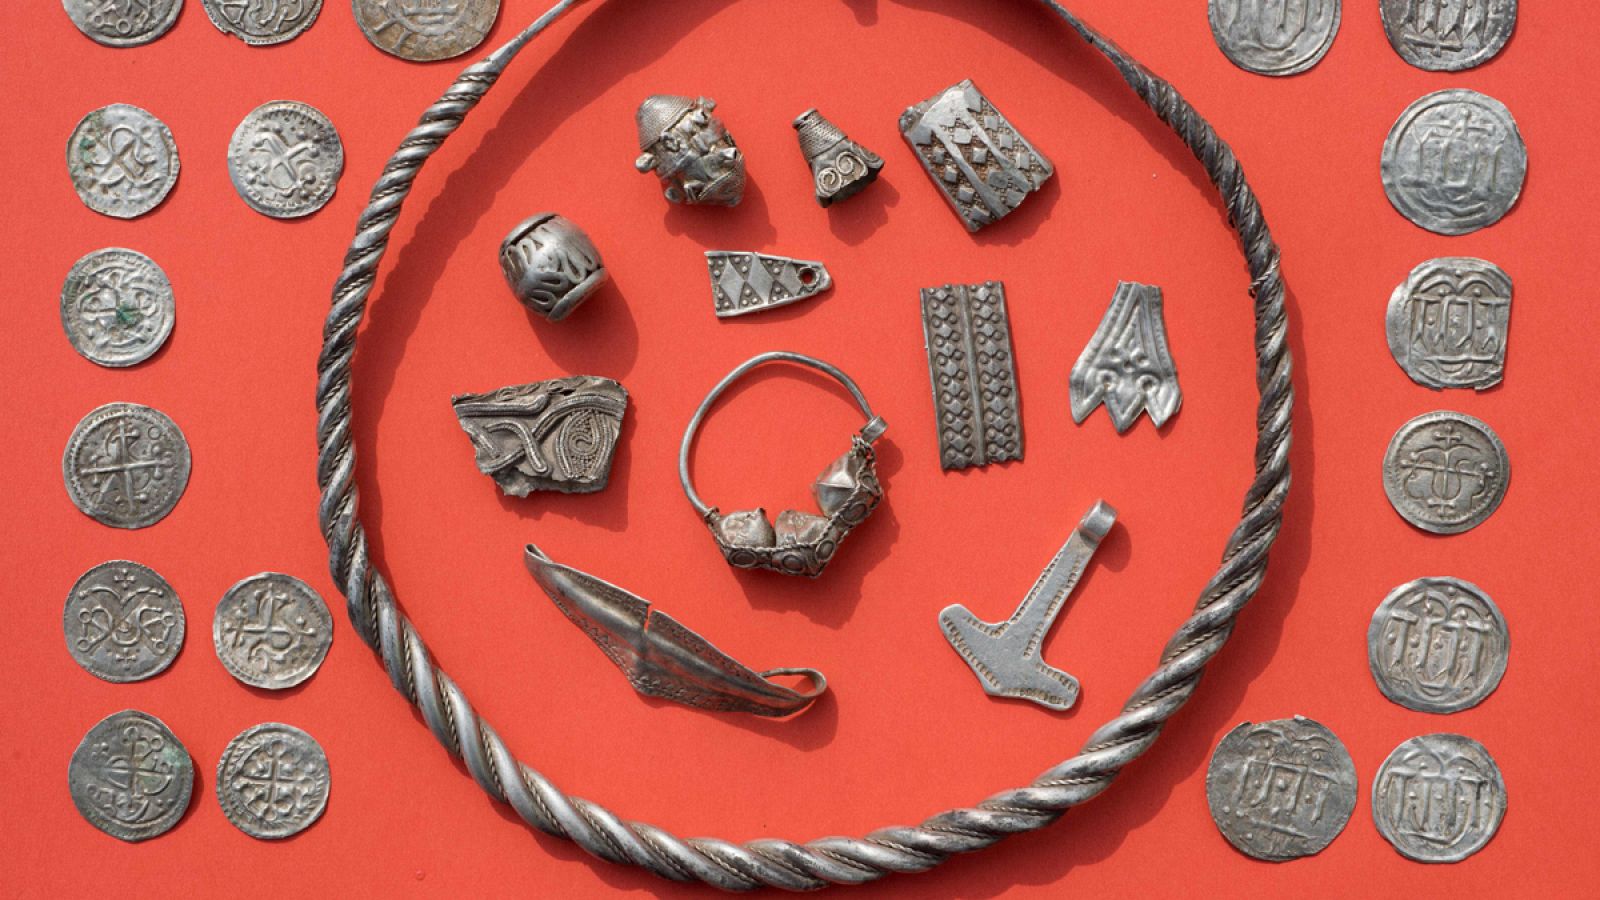 El tesoro consta de más de 600 piezas de plata con más de 1.000 años de antigüedad.